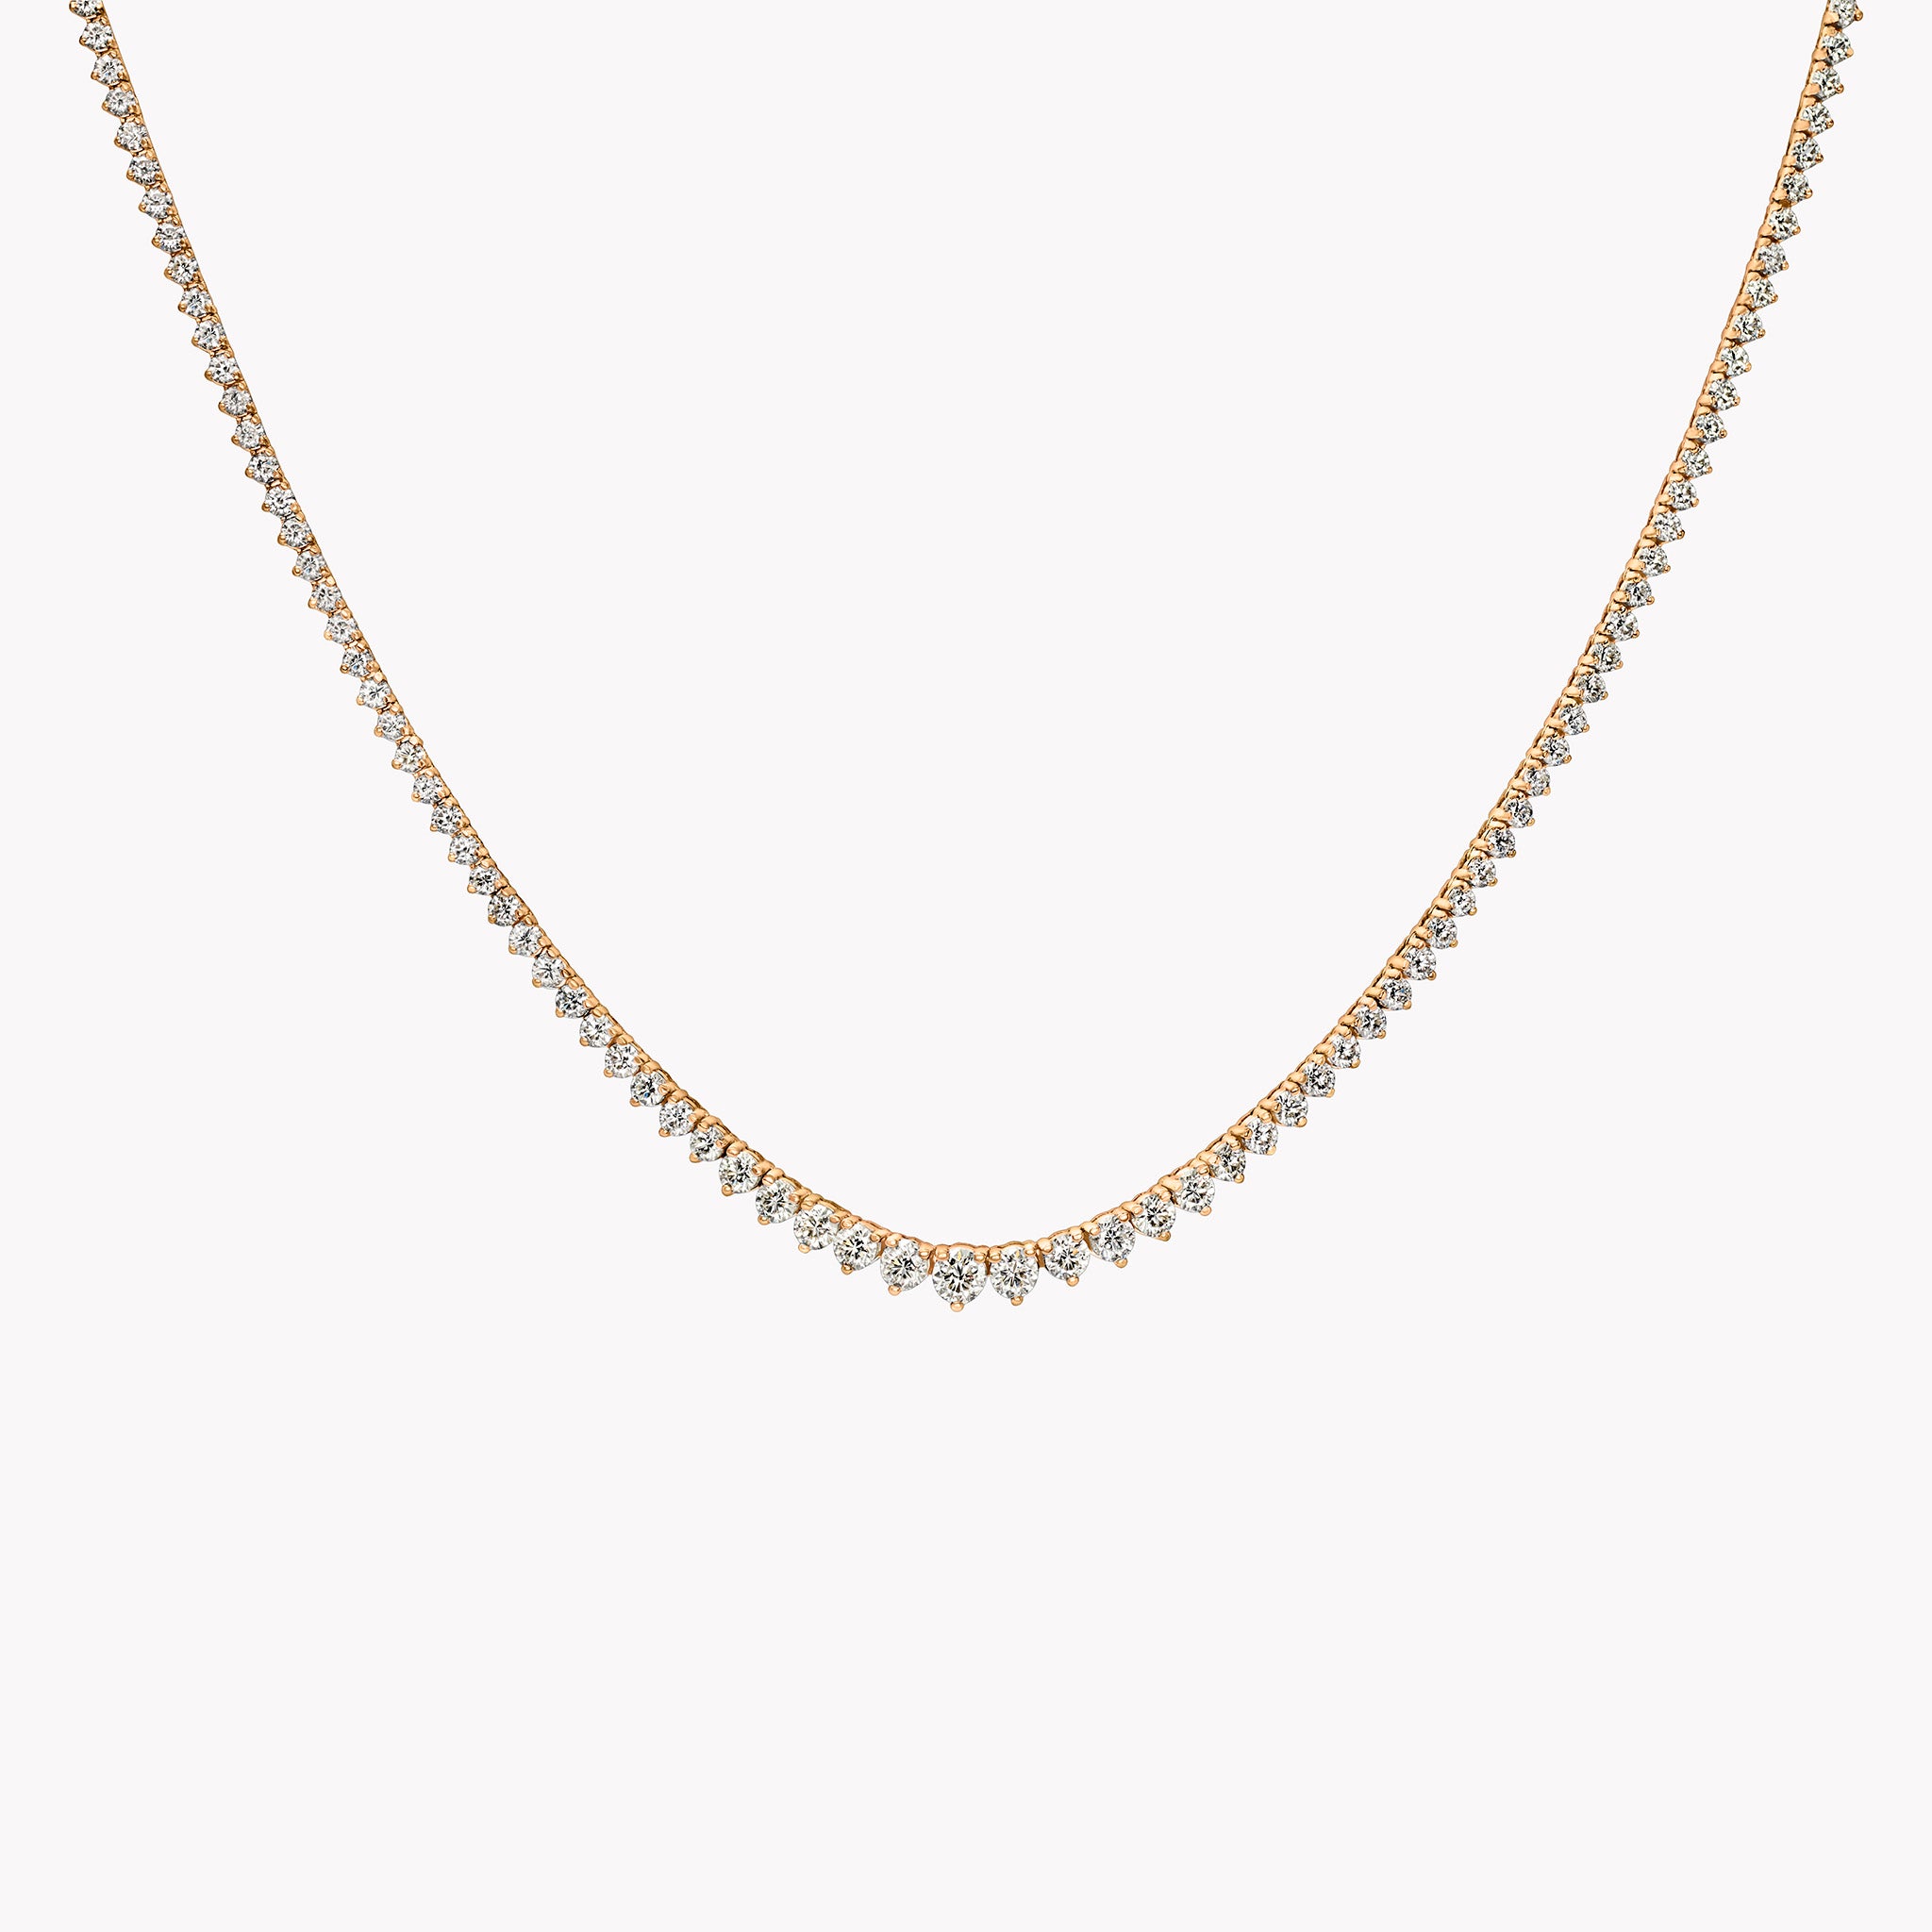 V Shaped Diamond Necklace - Necklaces from Monili Jewellers UK